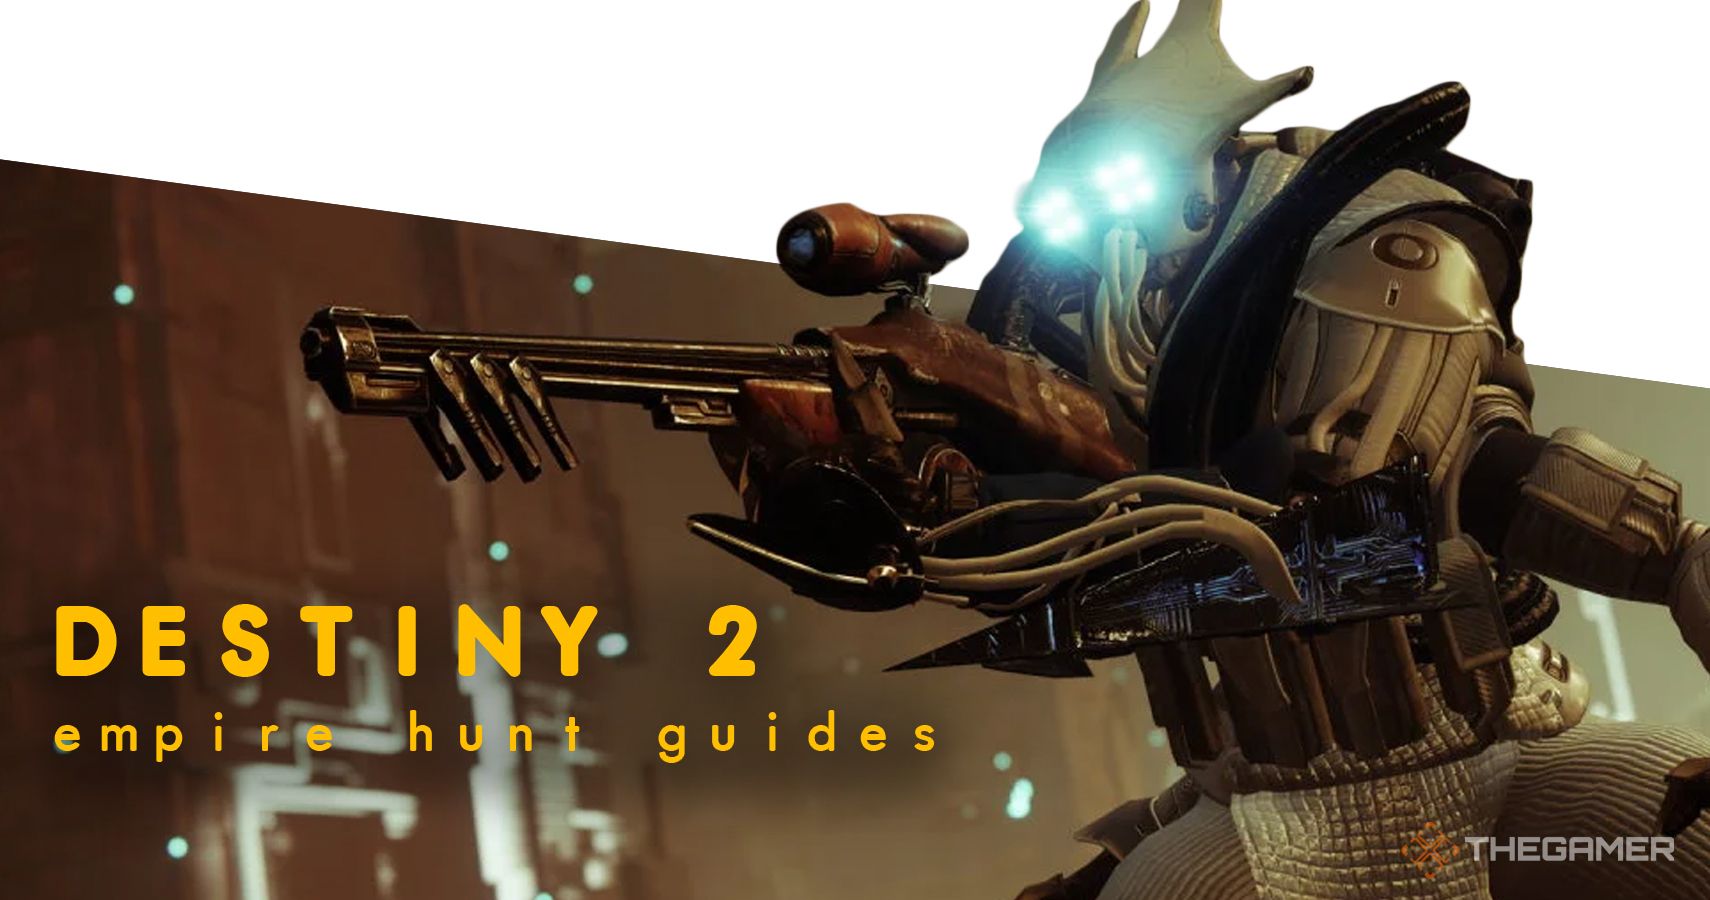 Destiny 2 empire hunt guides